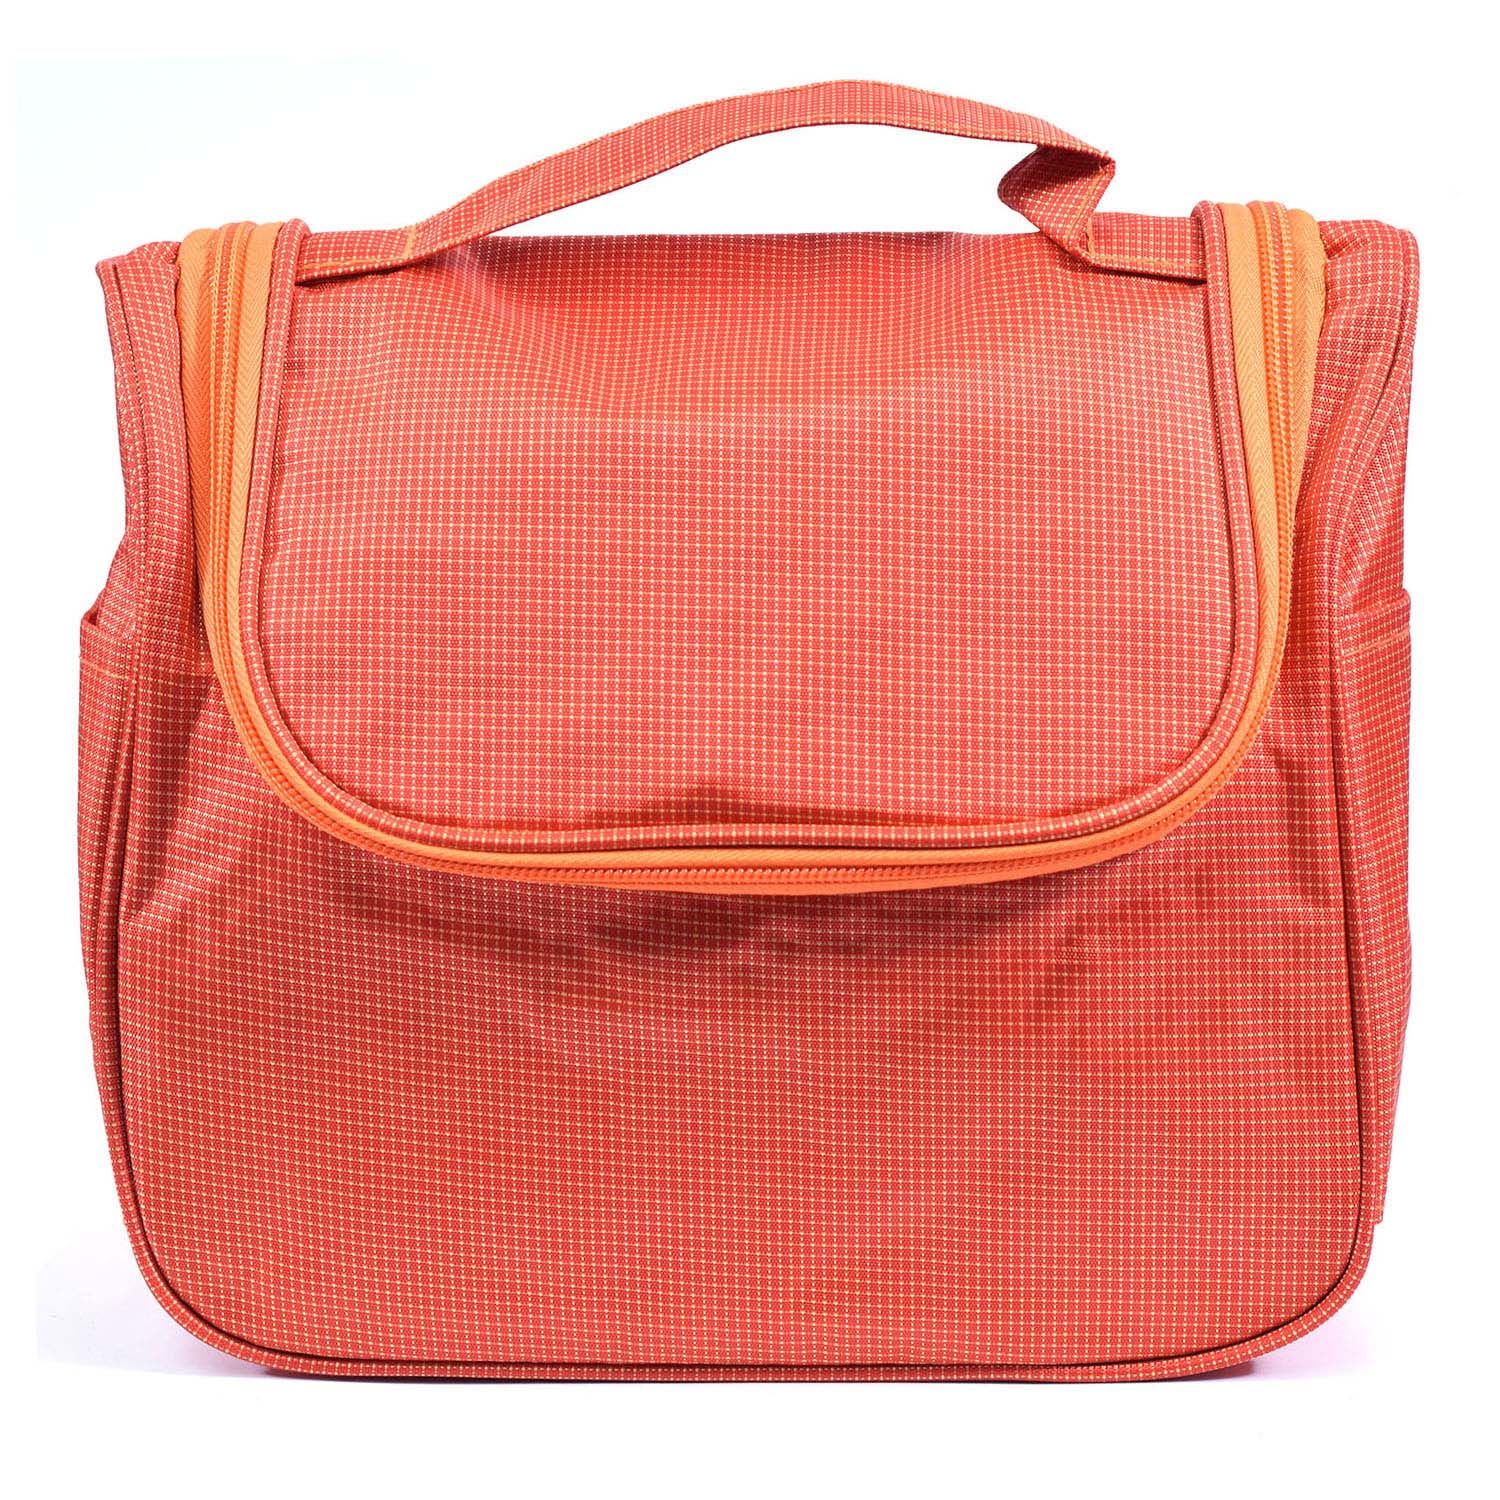 Buy Bonjour Paris Coat Me Premium Multi Purpose Makeup Bag / Travel Case Unisex , Orange - Purplle